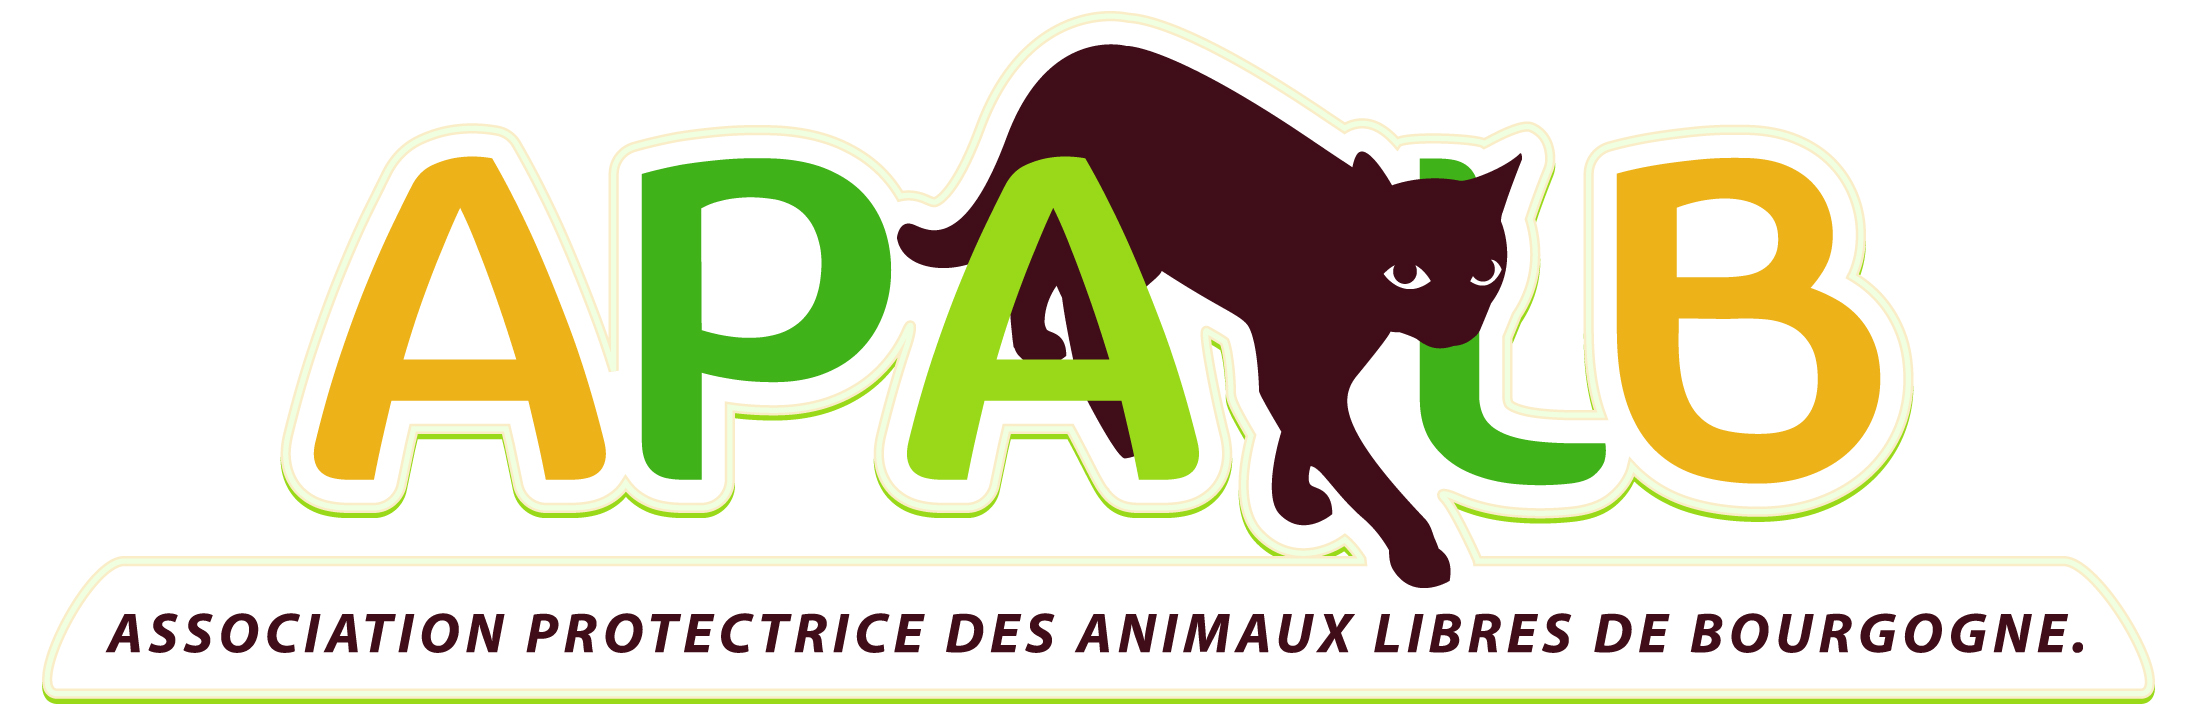 Association Protectrice des Animaux Libres de Bourgogne